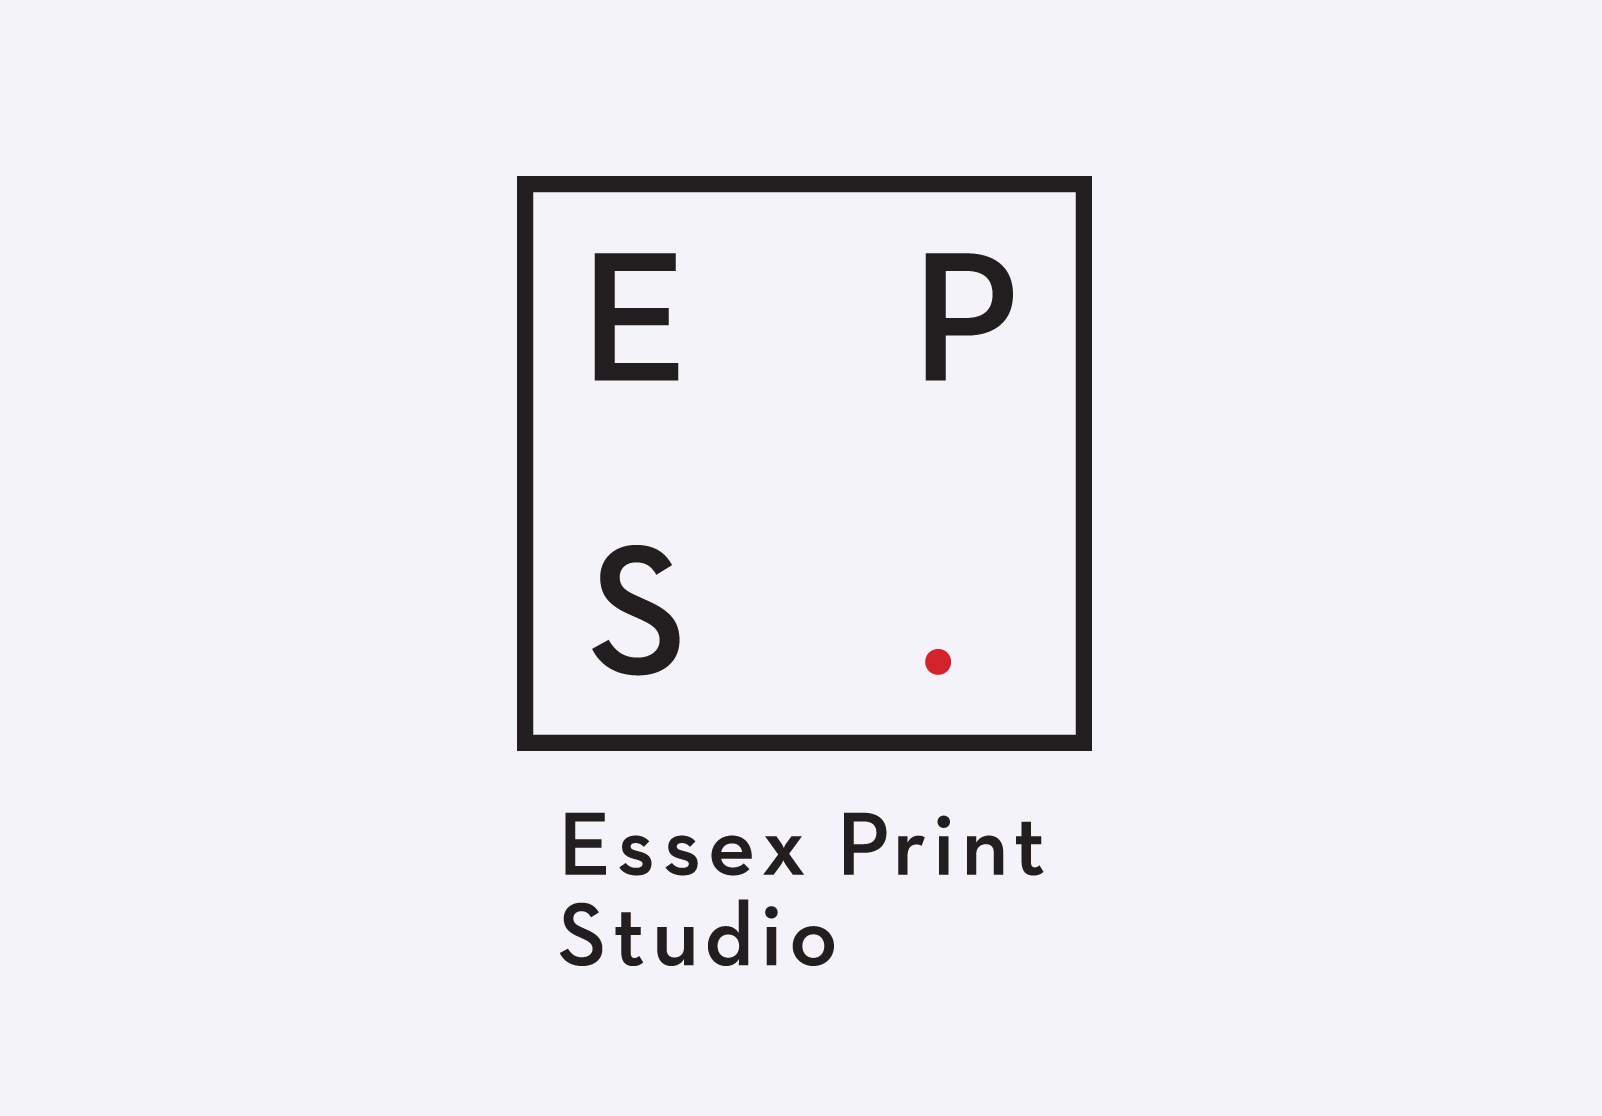 Essex Print studio logo design